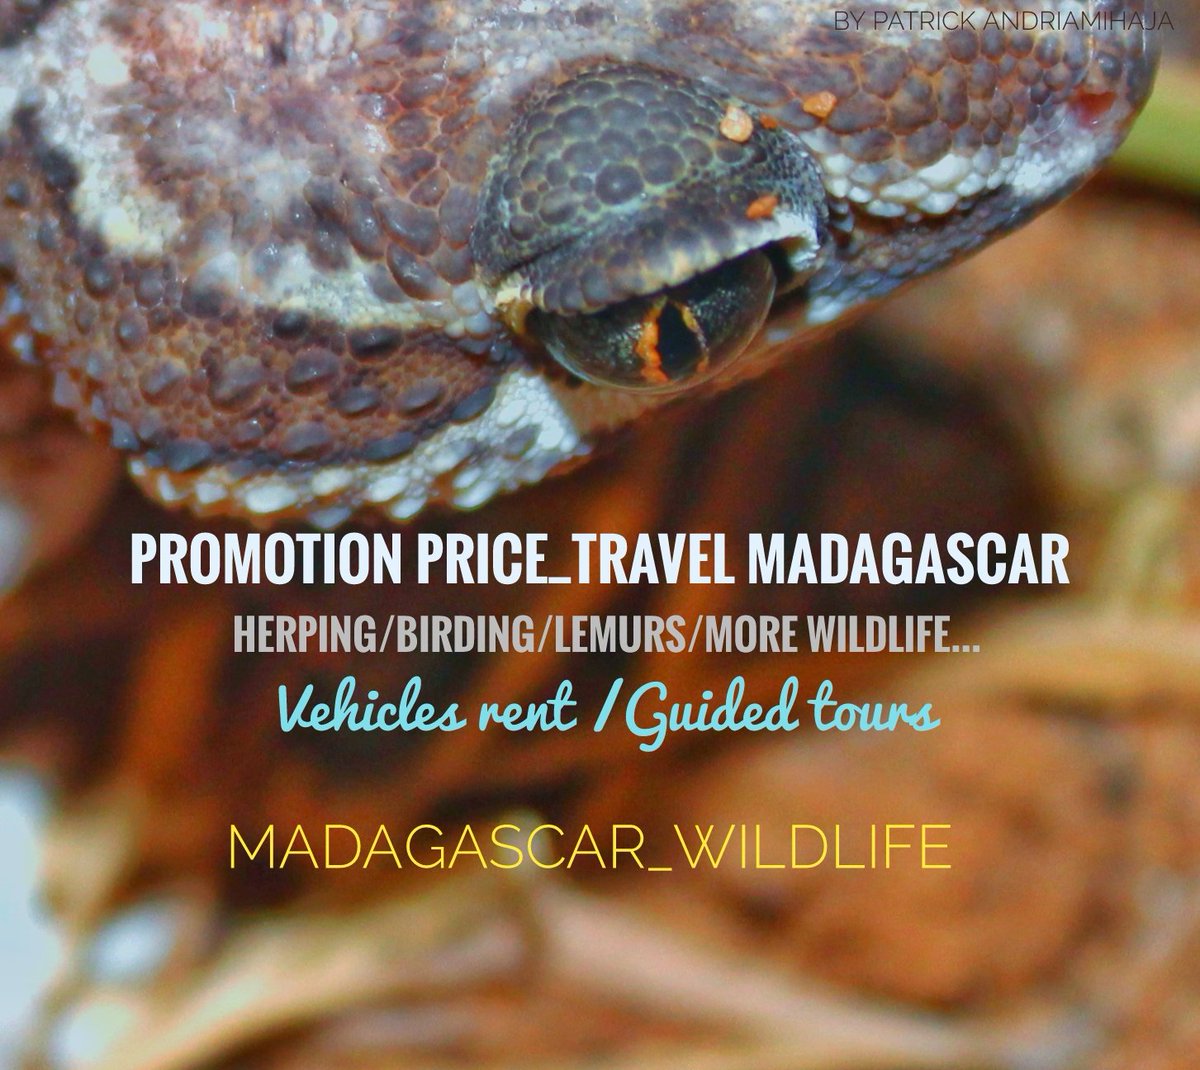 #traveltoMadagascar
#promotionprice_travelMadagascar #VehiclesRentMadagascar
#Hotelbooking_Madagascar
#Guidedtours_Madagascar
🇲🇬 #Madagascar_wildlife
#Local_freelance_GuideMadagascar #National_GuideMadagascar
#Official_GuideMadagascar
#byPatrickAndriamihaja